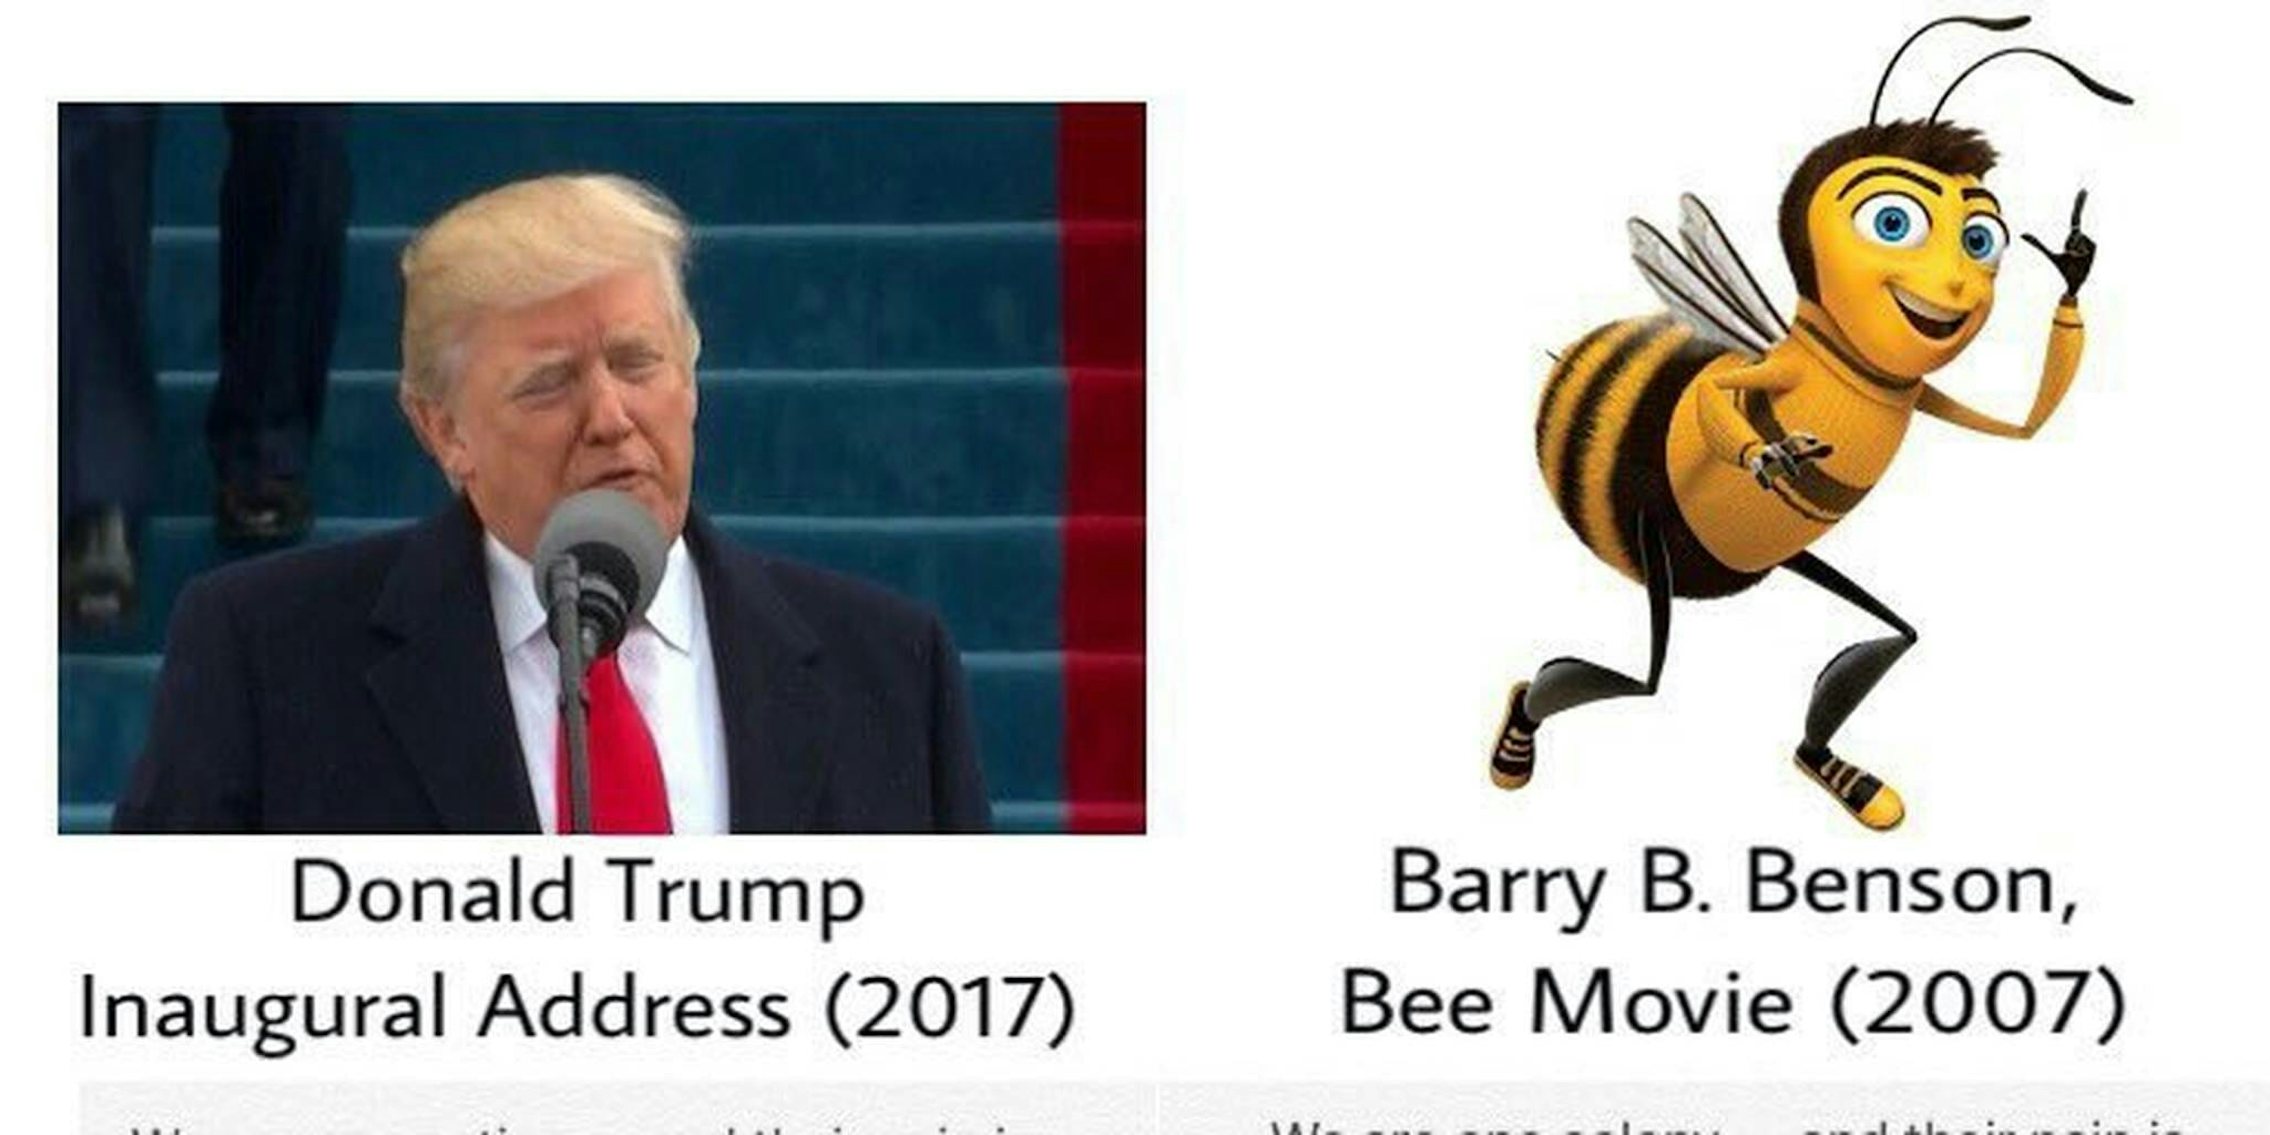 Trump Bee Movie tweet